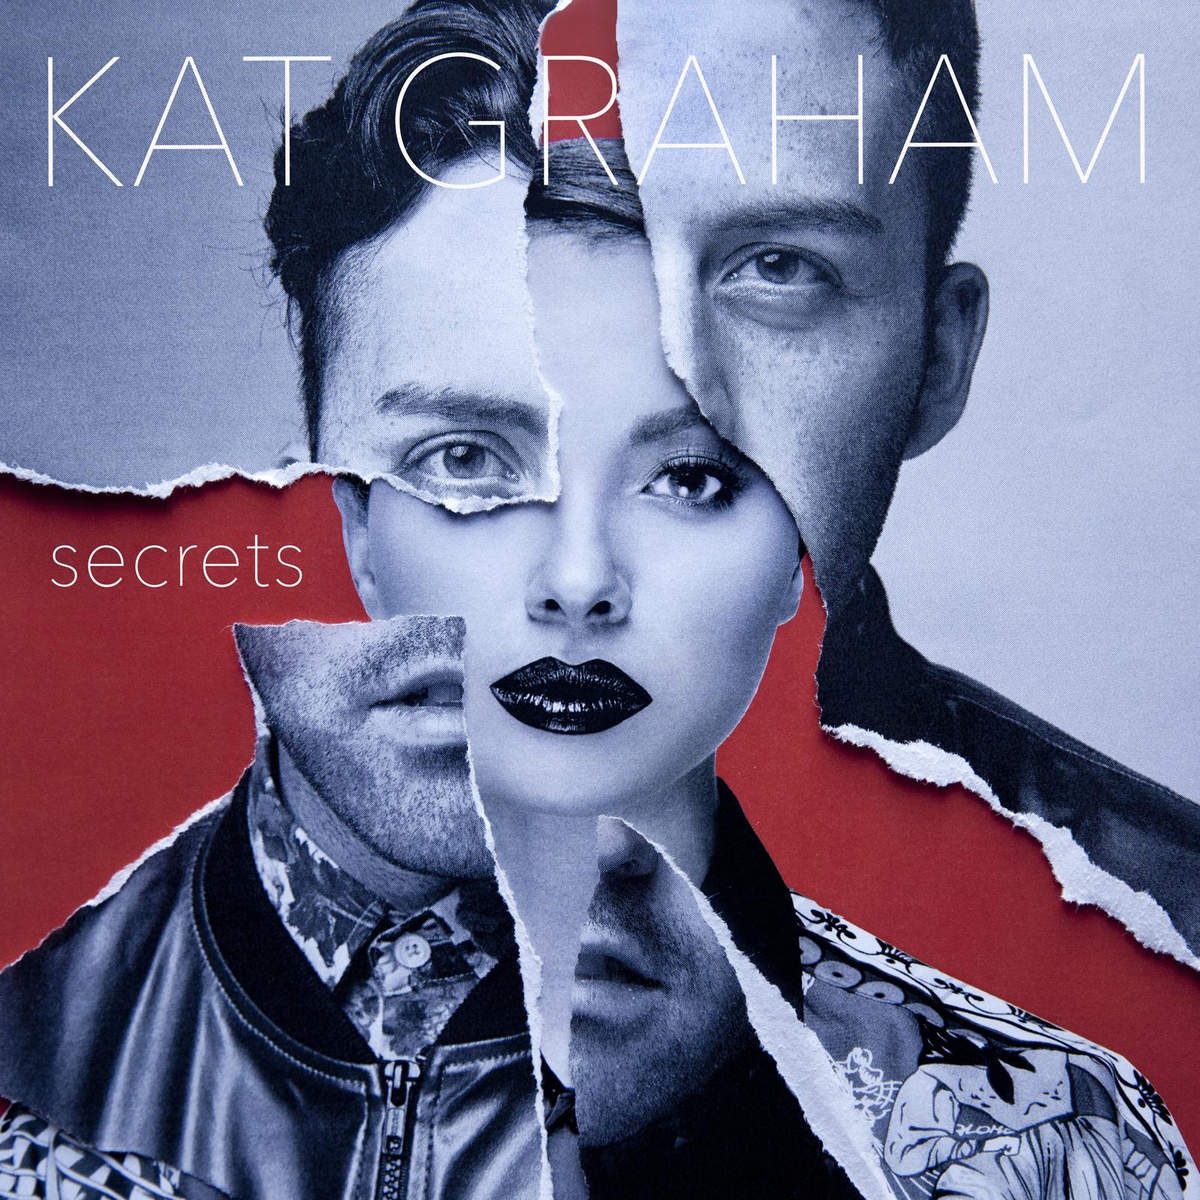 Secrets (feat. Babyface)